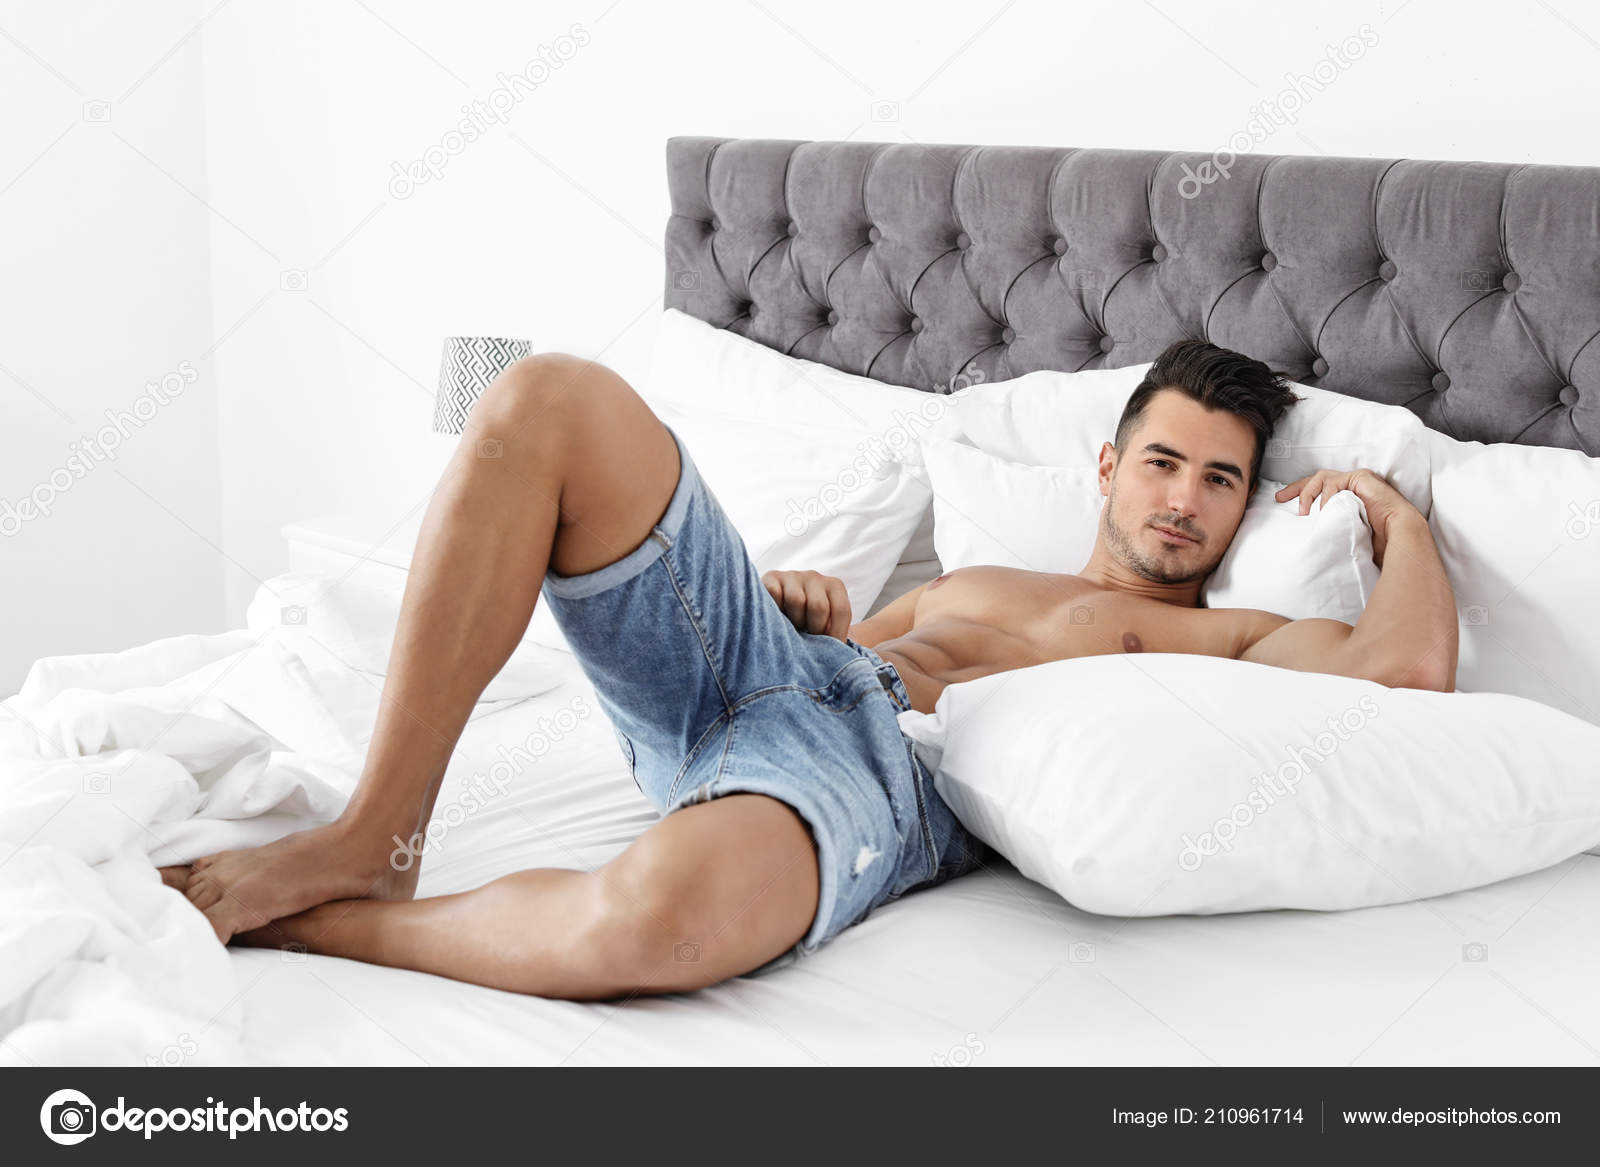 Сидит на постеле и ждёт мужа фото